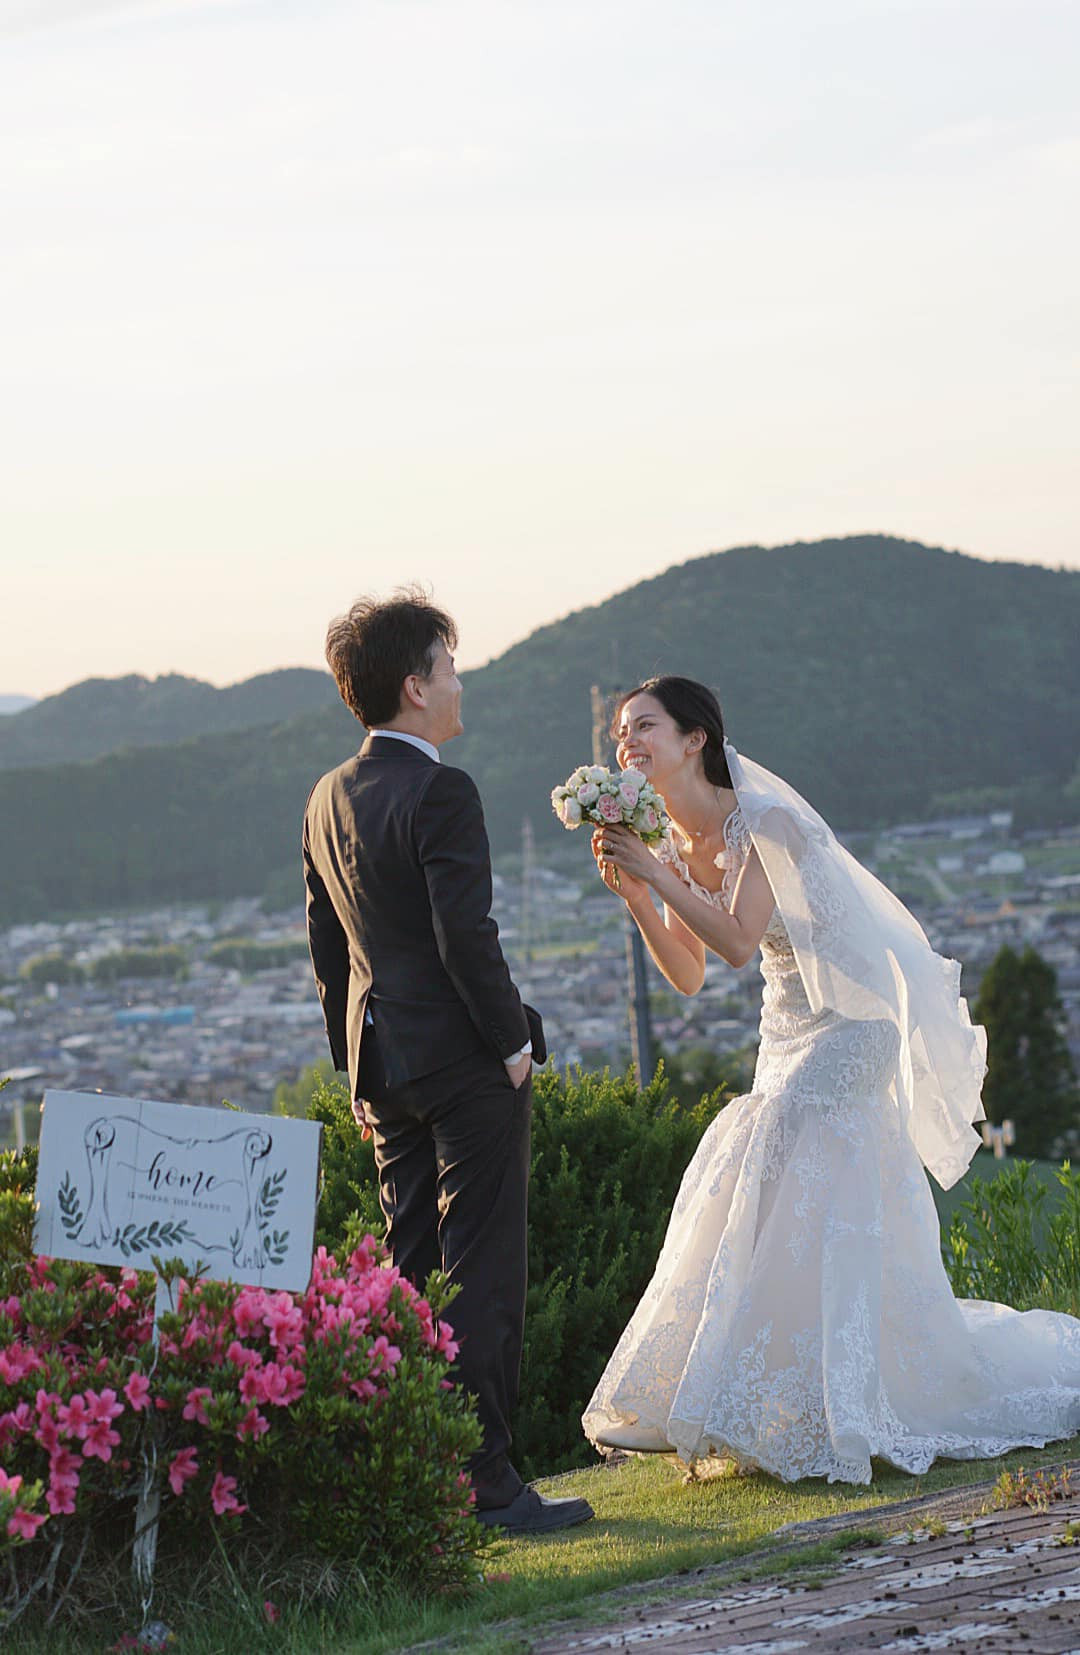 Chồng Nhật ngại tạo dáng, vợ Việt chờ 5 năm chụp ảnh cưới tuyệt đẹp 0 đồng - Ảnh 9.